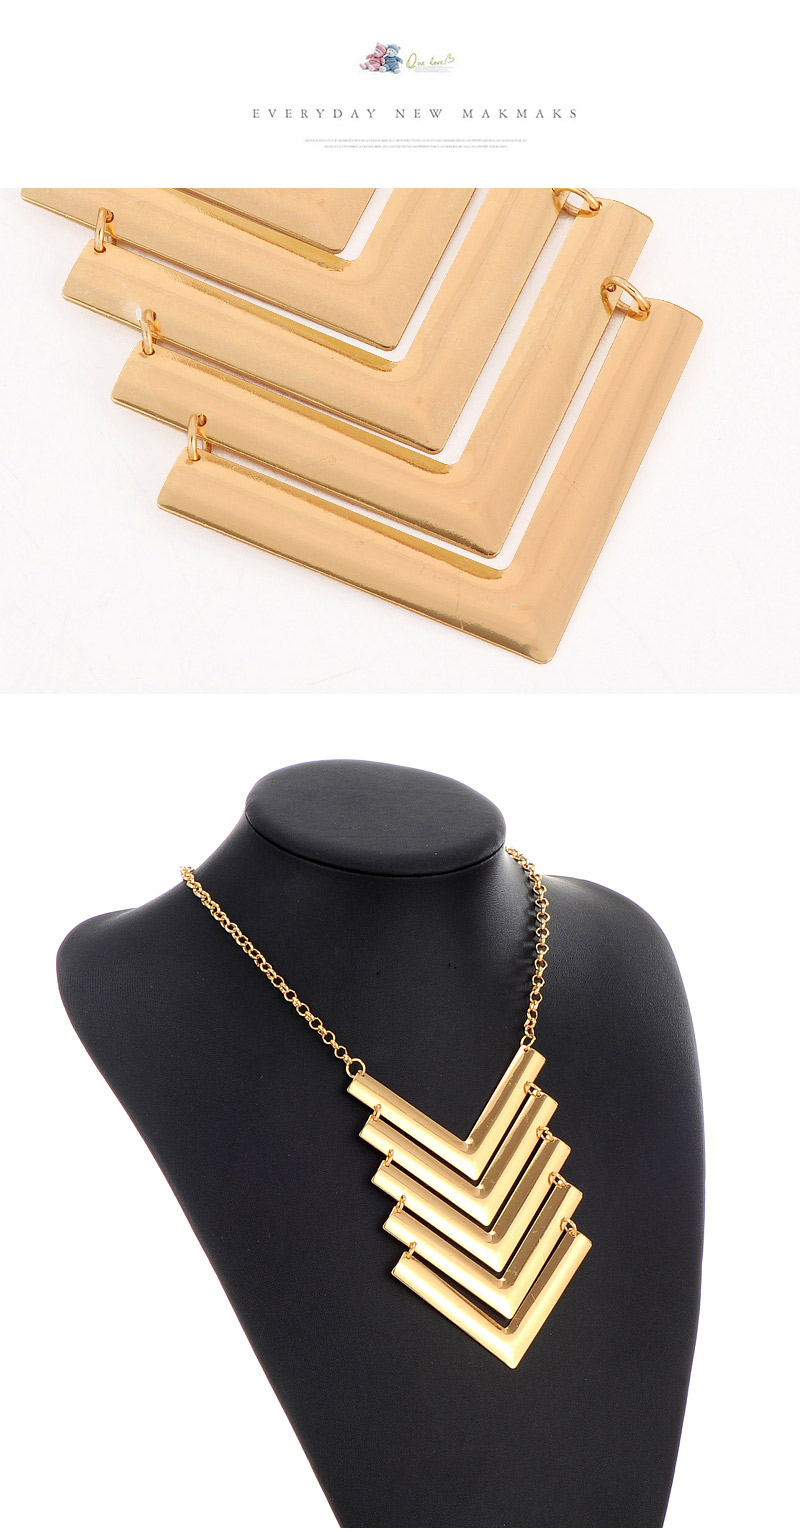 Fashion Gold Color V Shape Decorated Multilayer Design,Bib Necklaces